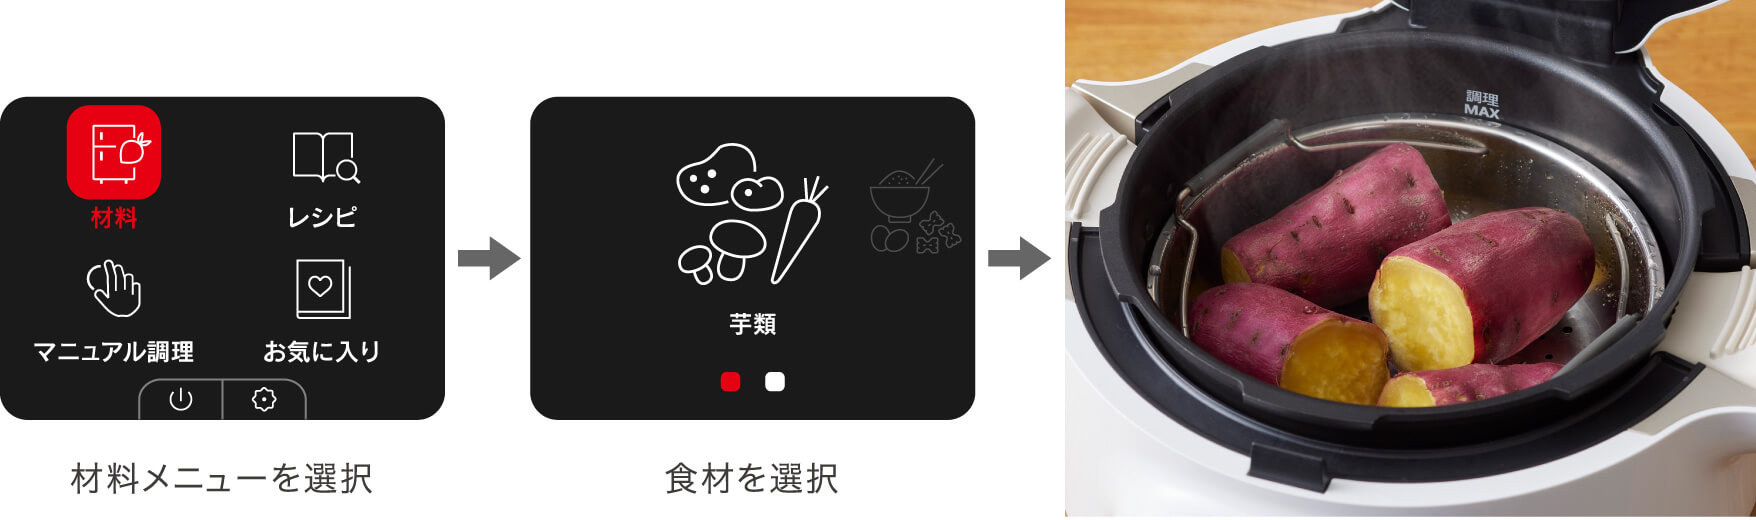 電気圧力鍋「クックフォーミー」で作れるレシピをご紹介 | 電気圧力鍋 